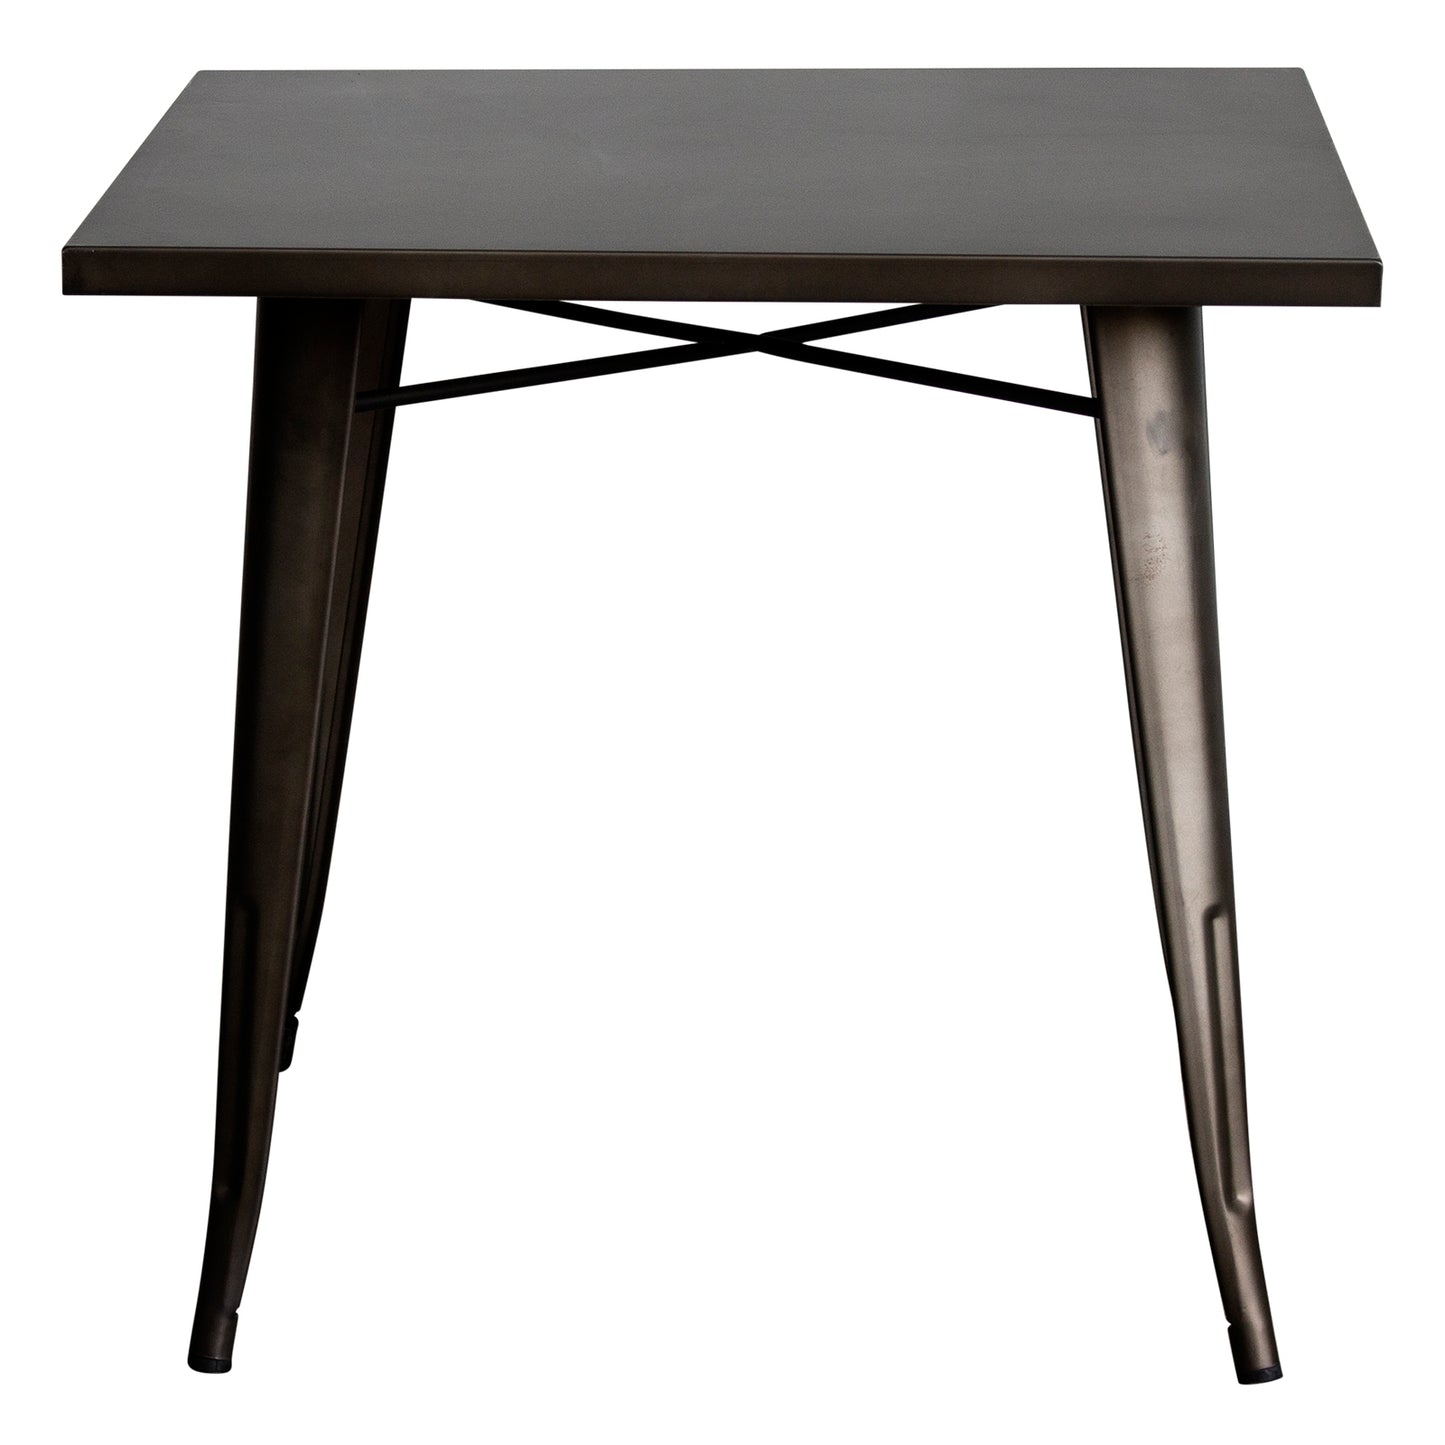 3PC Belvedere Table & Palermo Chair Set - Gun Metal Grey